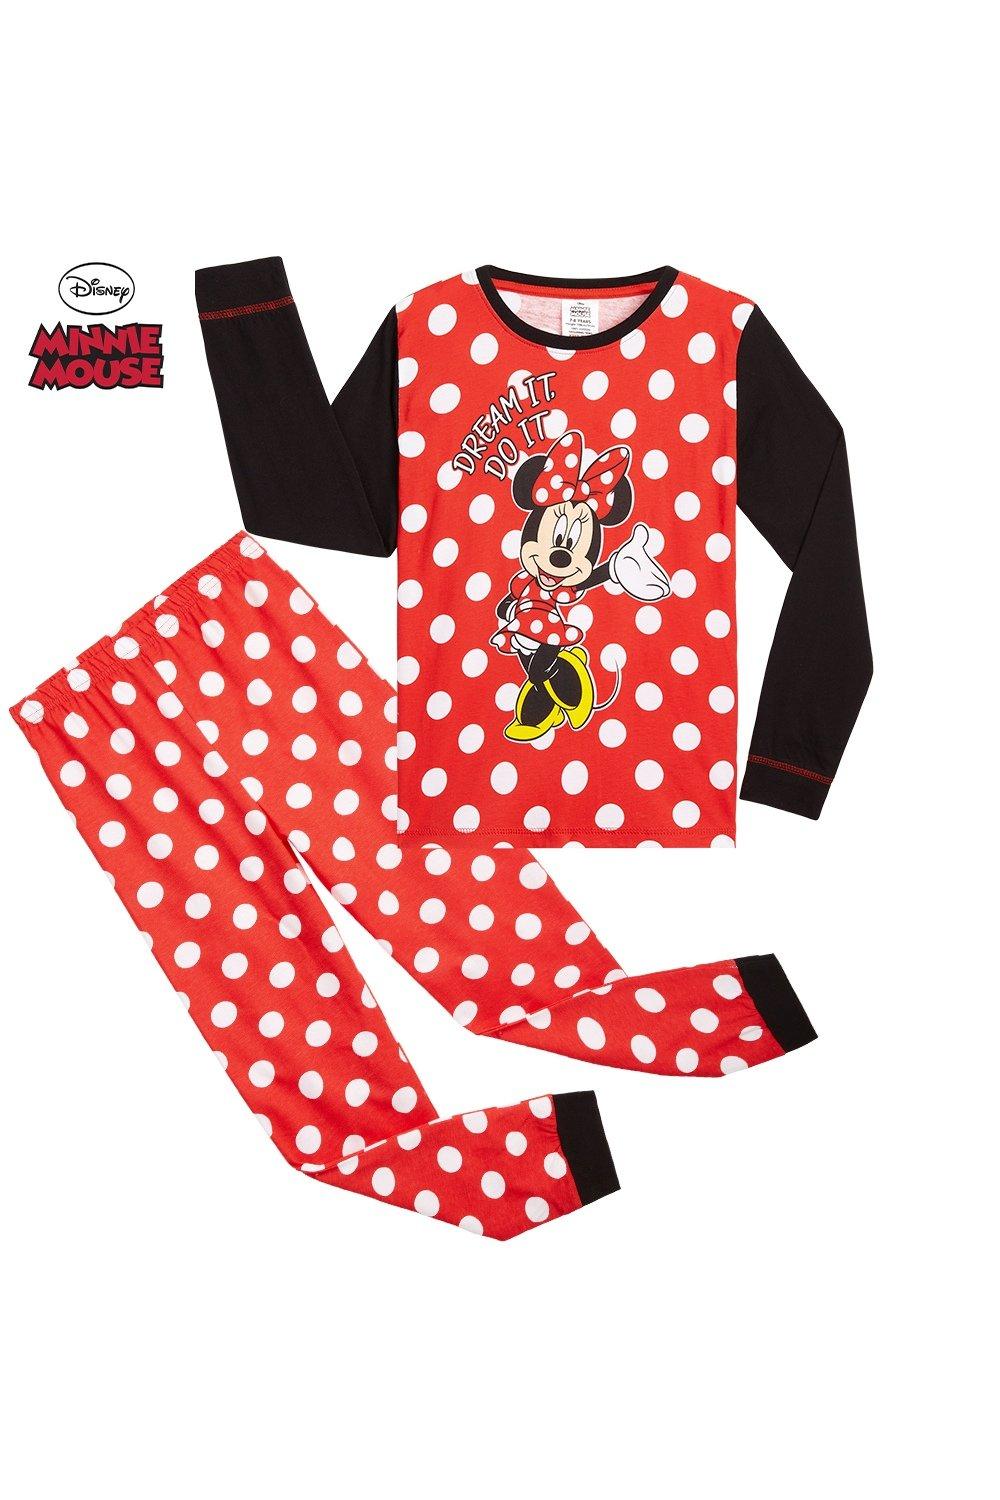 Пижамный комплект Минни Маус Disney, красный короткий пижамный комплект с минни маус disney мультиколор